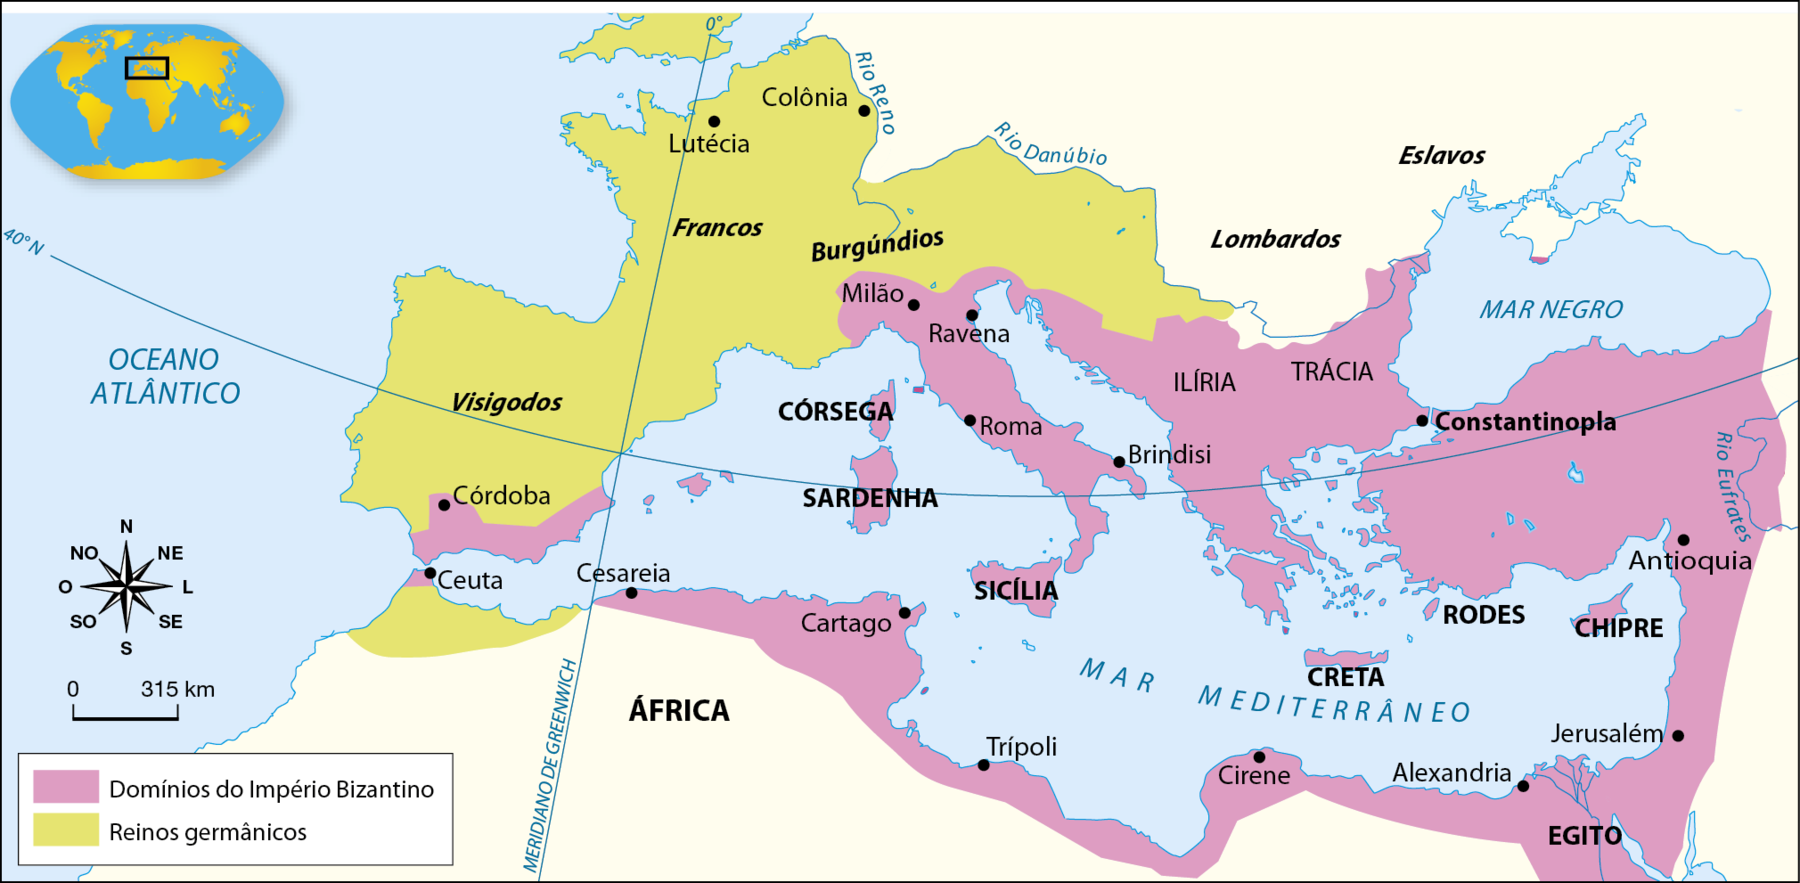 Mapa. O Império Bizantino no governo de Justiniano (527 a 565).
No centro, o Mar Mediterrâneo. Ao norte, parte da Europa, ao sul, o Norte da África, ao leste, a Ásia, a oeste, o Oceano Atlântico. Alguns territórios estão destacados por cores 
Em lilás, ‘Domínios do Império Bizantino’, que englobavam o sul da Península Ibérica, onde se localizava a cidade de Córdoba; o extremo norte da África, no litoral próximo ao estreito de Gibraltar, onde ficava a cidade de Ceuta; o norte da África a leste do meridiano de Greenwich onde ficavam as cidades de Cesareia, Cartago, Trípoli, Cirene, e, no Egito, a de Alexandria; as ilhas da Córsega, da Sardenha, da Sicília, de Creta, de Rodes, de Chipre e as do Mar Egeu; a Península Itálica, com destaque para as cidades de Milão, Ravena, Roma e Brindisi; a Ilíria; a Trácia, a Ásia Menor, com destaque para a cidade de Constantinopla; o extremo sul da Península da Crimeia; a região do Levante, a  oeste do rio Eufrates, com destaque para as cidades de cidades de Antioquia e Jerusalém.
Em verde, ‘Reinos germânicos’, estendendo-se, na África, ao sul do estreito de Gibraltar e à oeste do meridiano de Greenwich. E na Europa, ao sul dos rios Reno e Danúbio, pela Península Ibérica, (visigodos); na antiga Gália (os francos), com destaque para as cidades de Lutécia e Colônia. Os burgúndios, ao norte da Península Itálica. Ao norte da Trácia, os lombardos e os eslavos em um território a noroeste do Mar Negro. Estes dois povos, contudo, não estão assinalados  como reinos.
No canto inferior esquerdo, rosa dos ventos e escala de 0 a 315 quilômetros.